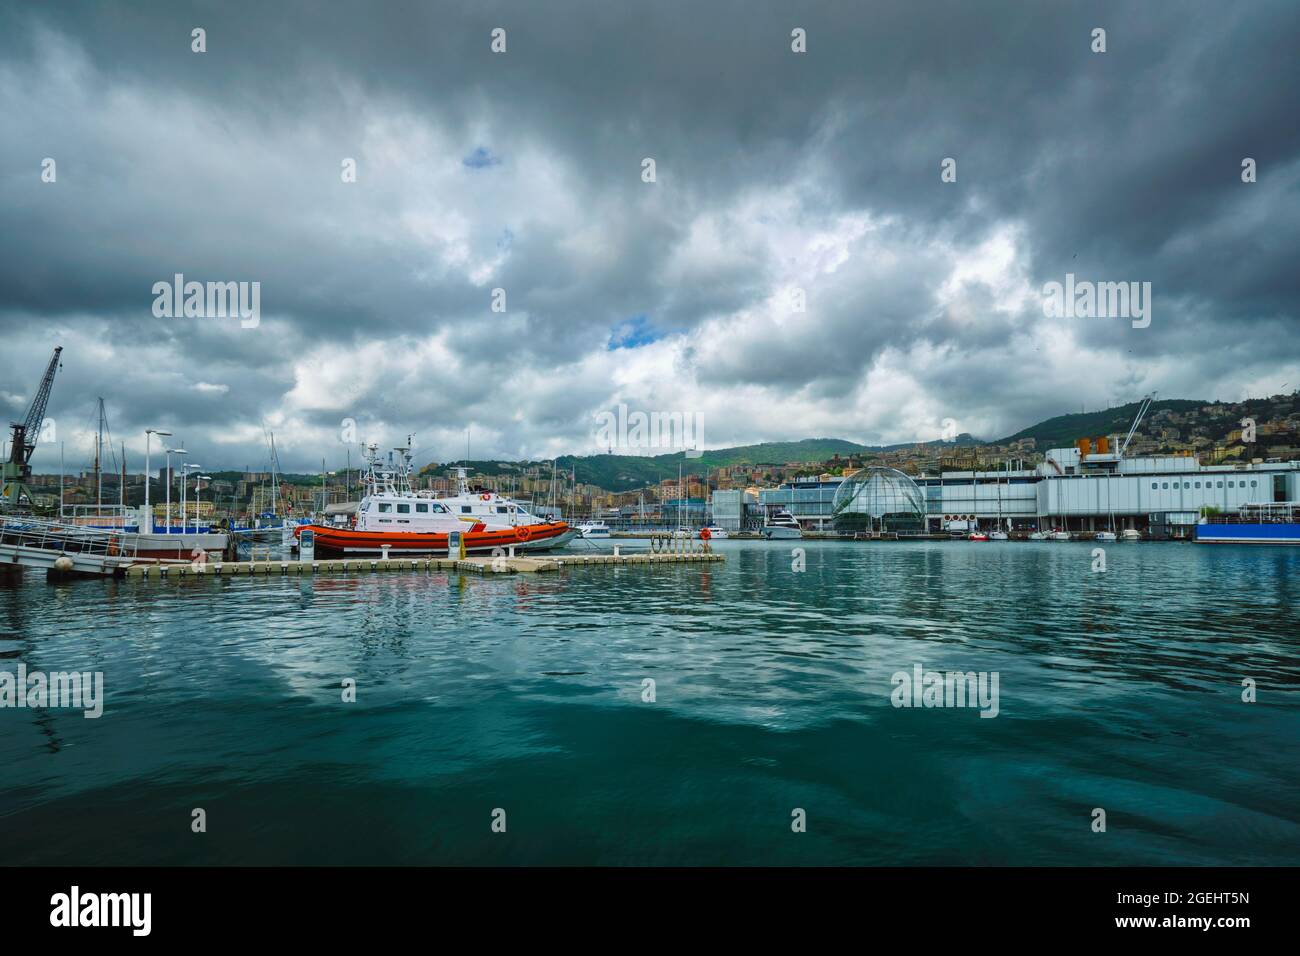 Port of Genoa Genova with yachts and boats. Genoa, Italy Stock Photo